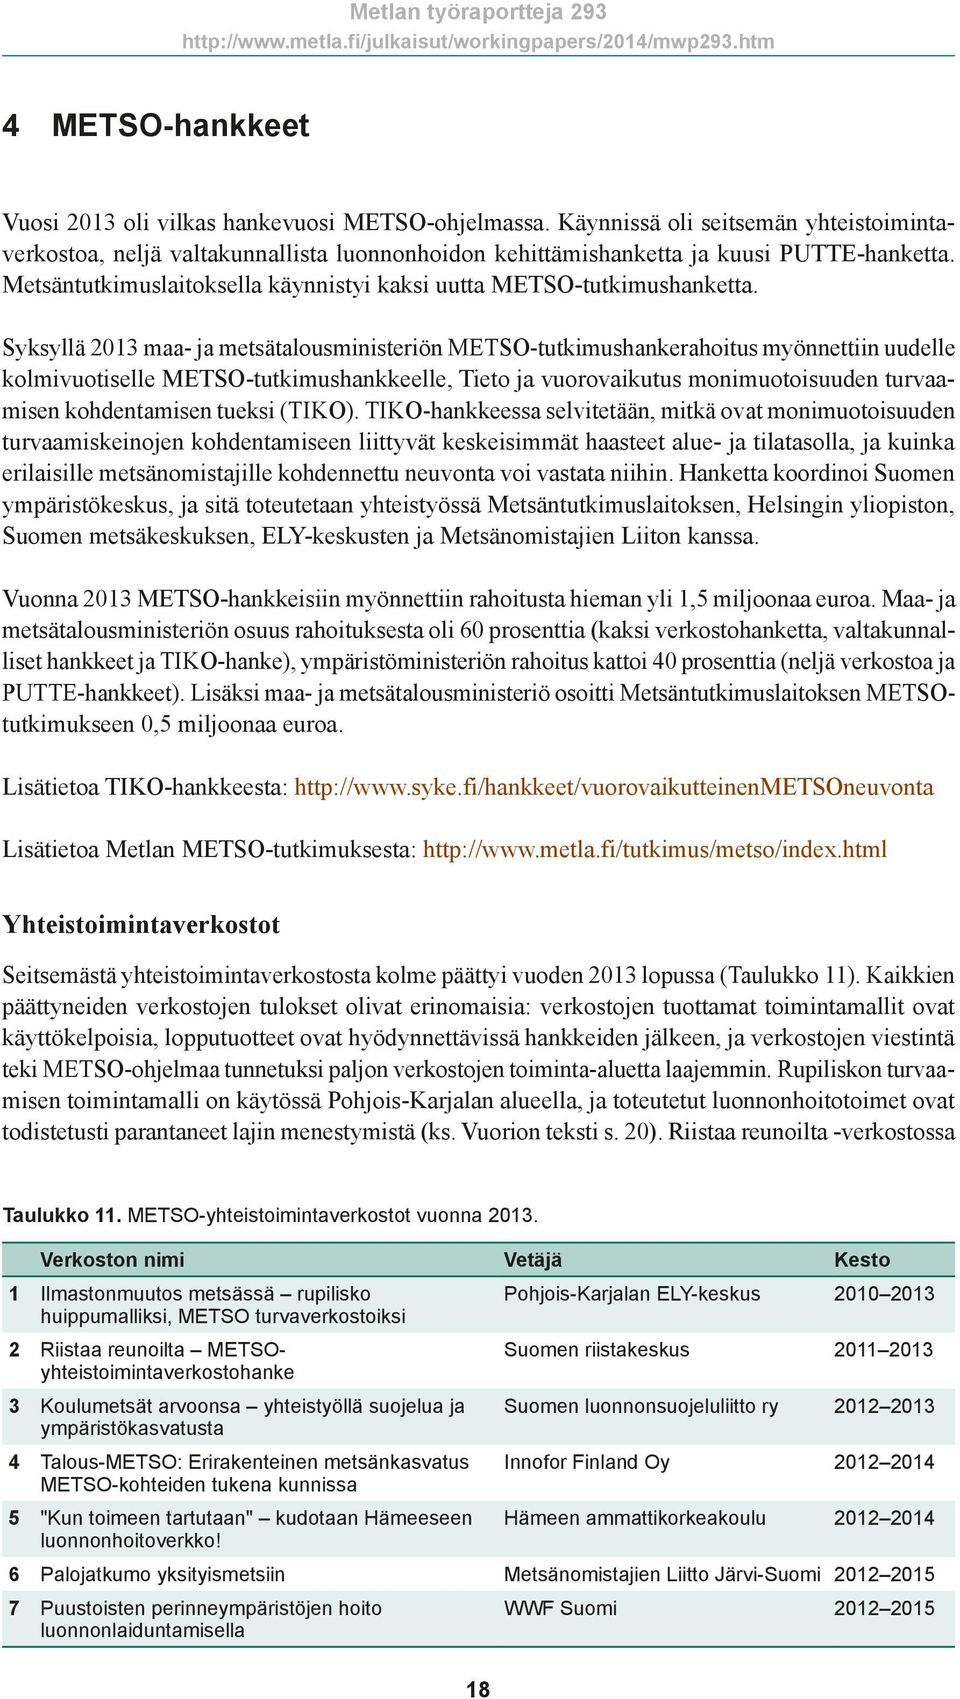 Syksyllä 2013 maa- ja metsätalousministeriön METSO-tutkimushankerahoitus myönnettiin uudelle kolmivuotiselle METSO-tutkimushankkeelle, Tieto ja vuorovaikutus monimuotoisuuden turvaamisen